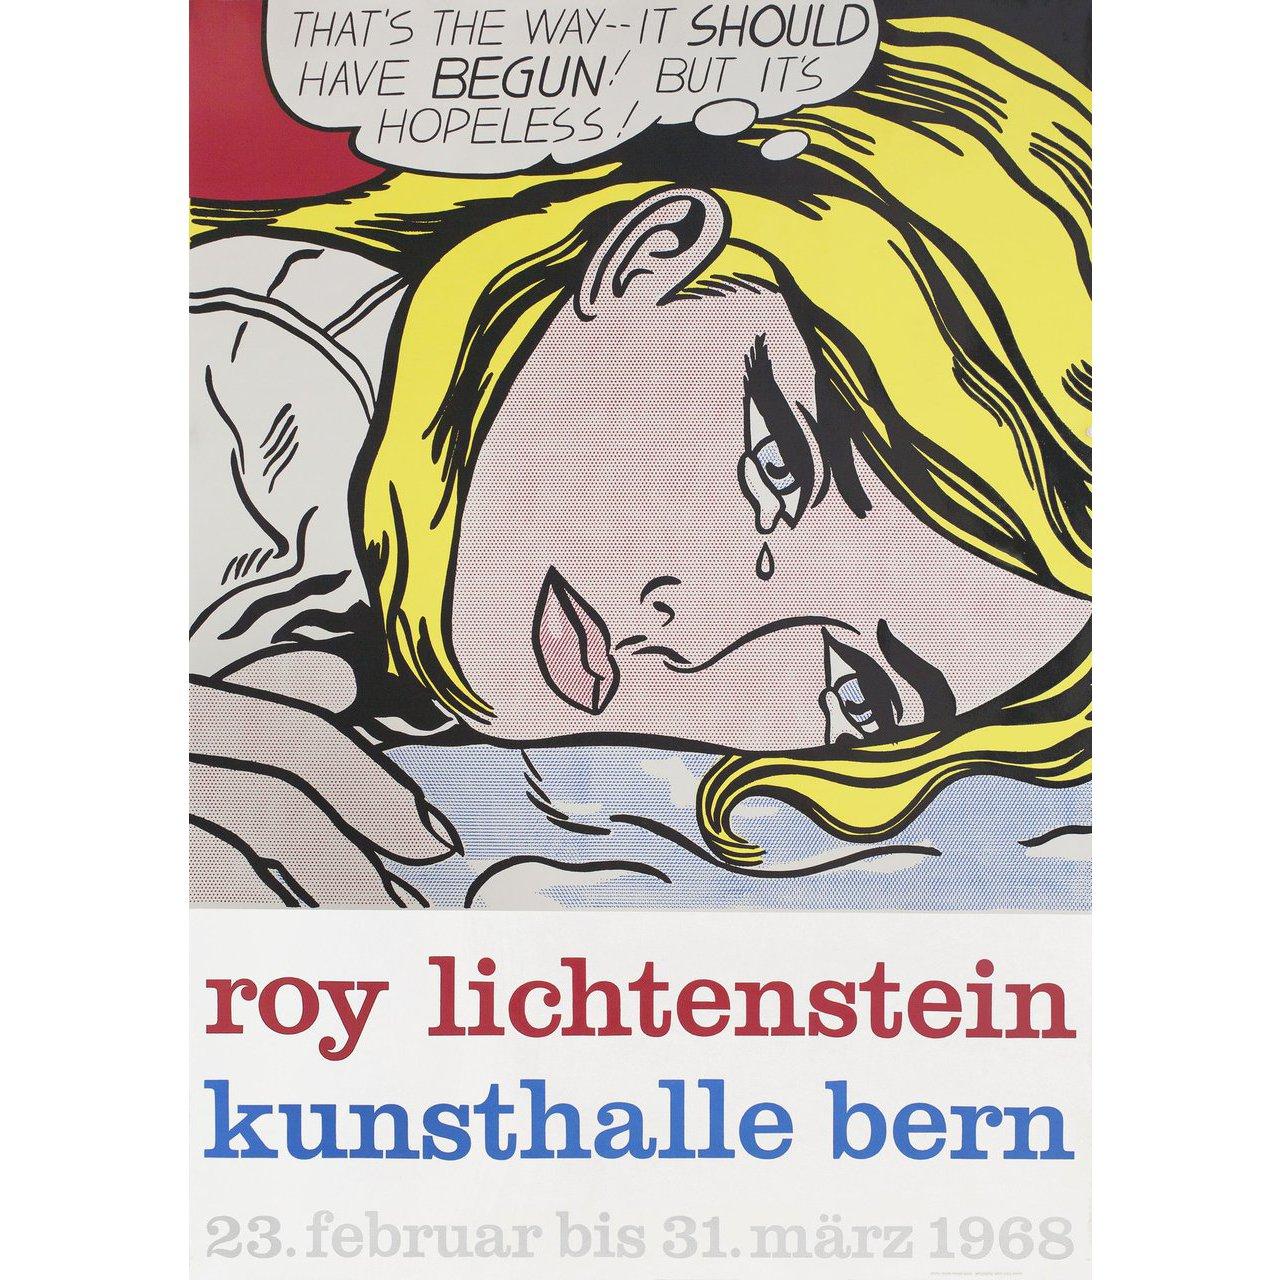 roy lichtenstein date of birth